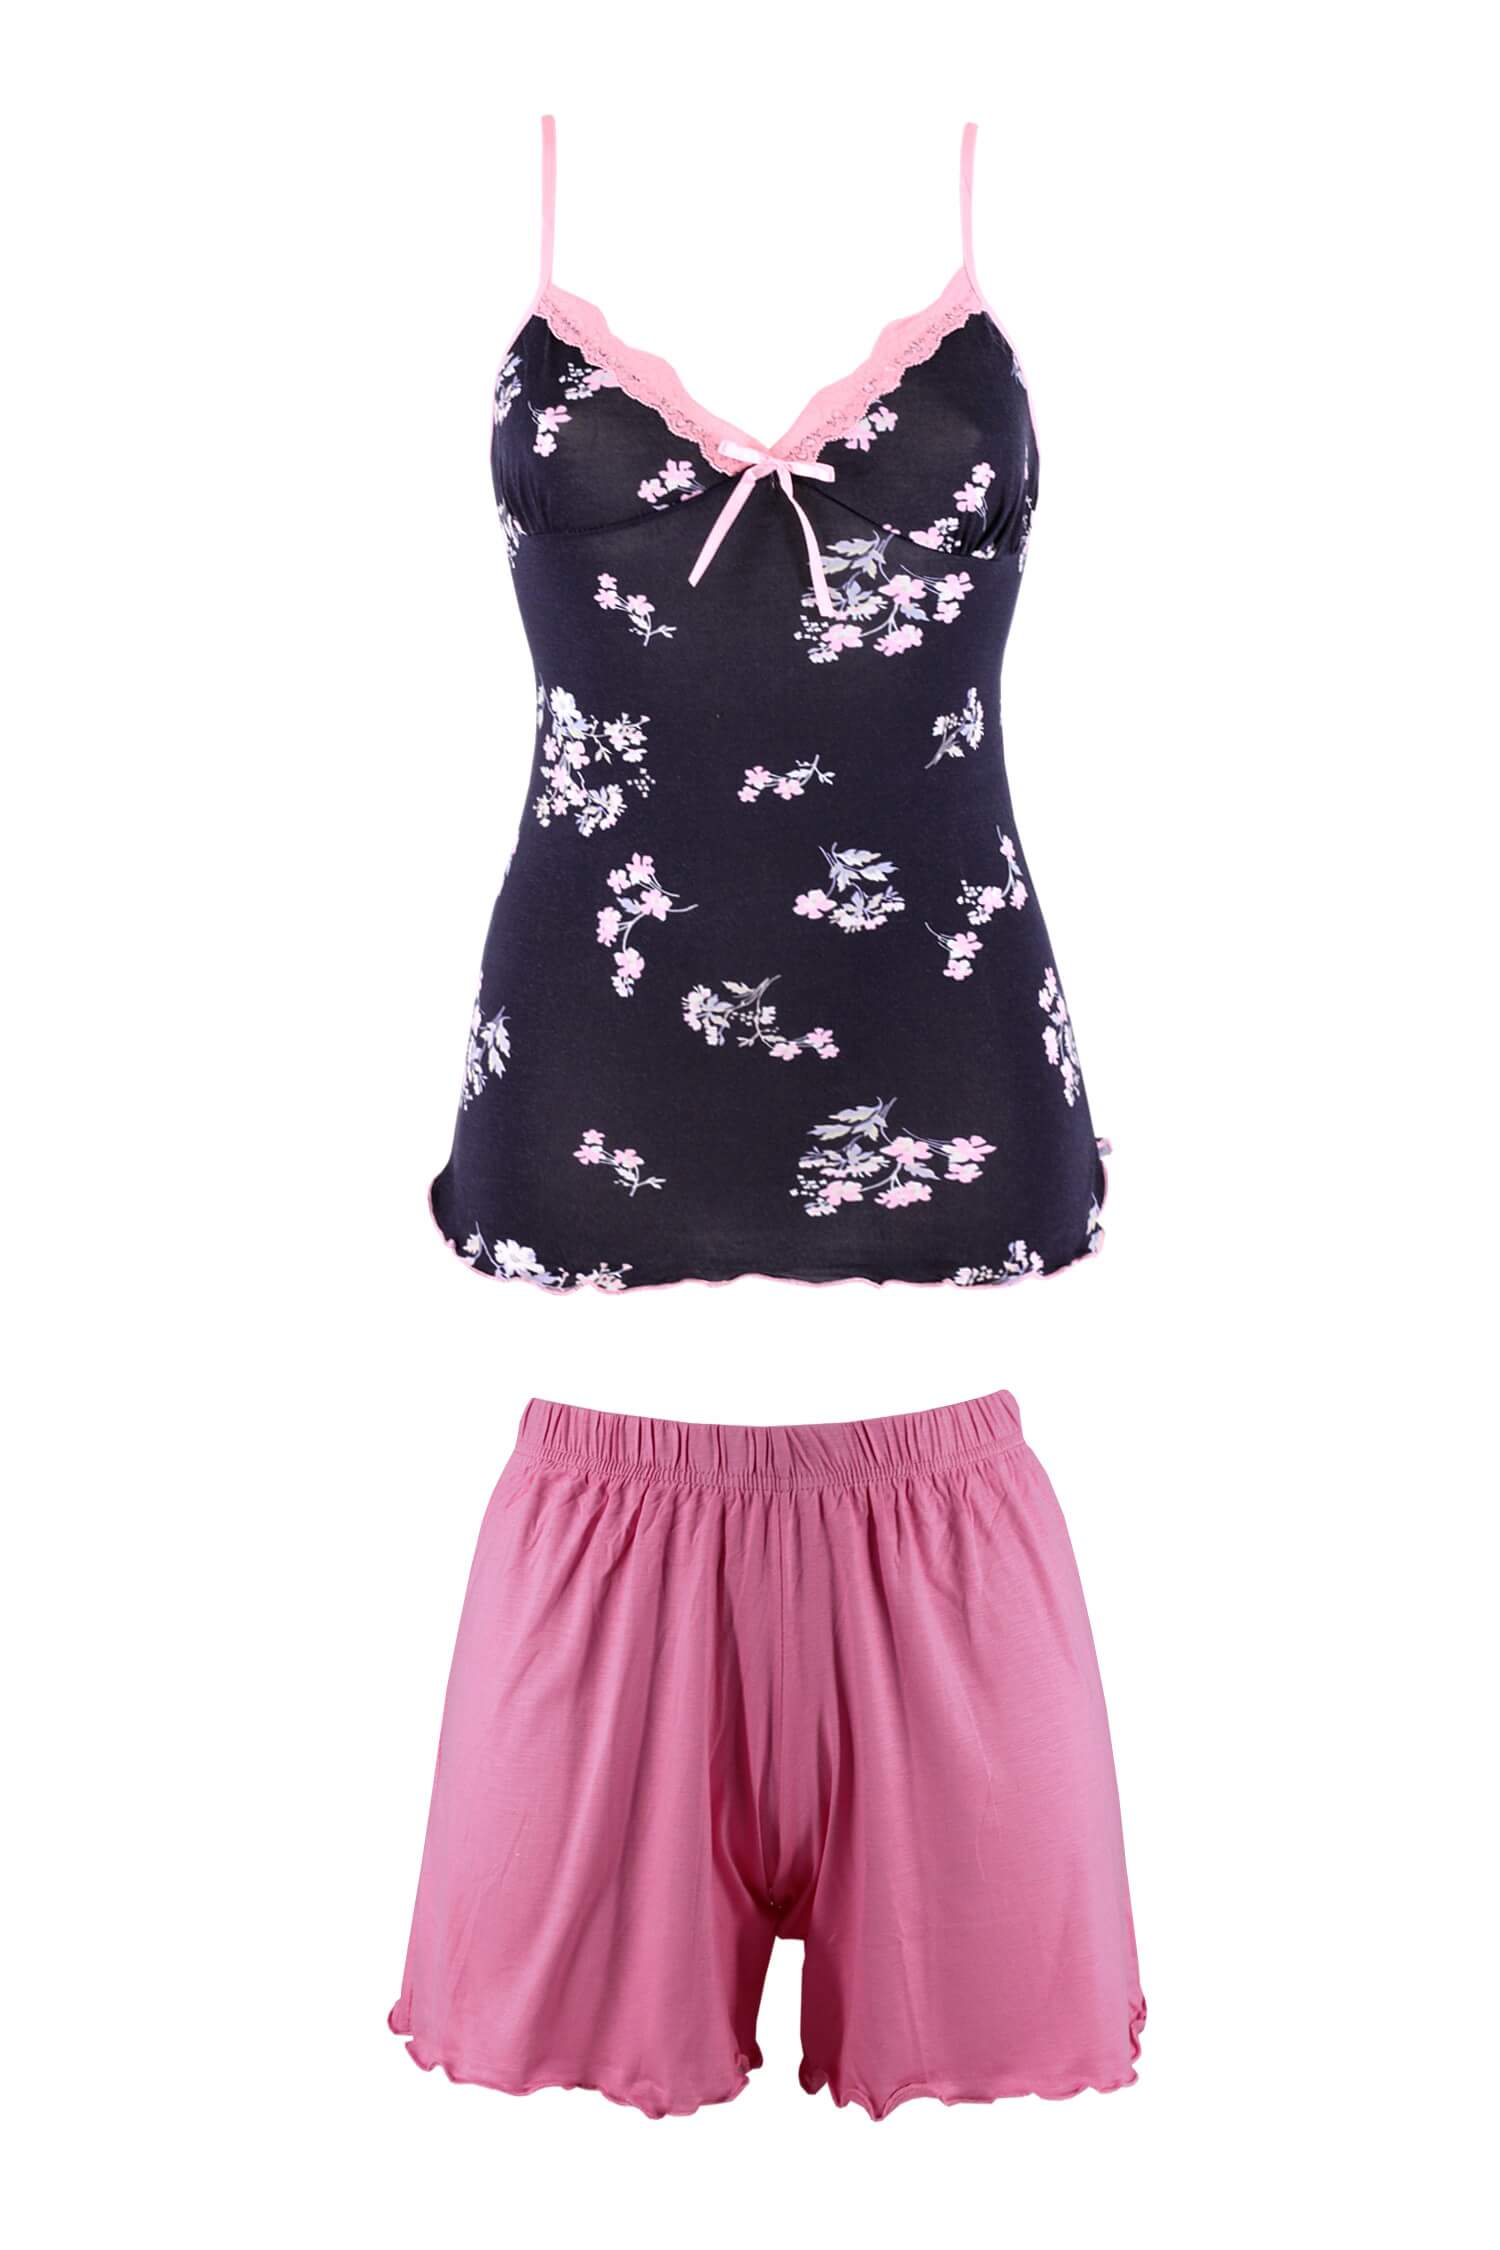 Vonia letní set košilka kraťasy pyžamo 3XL růžová